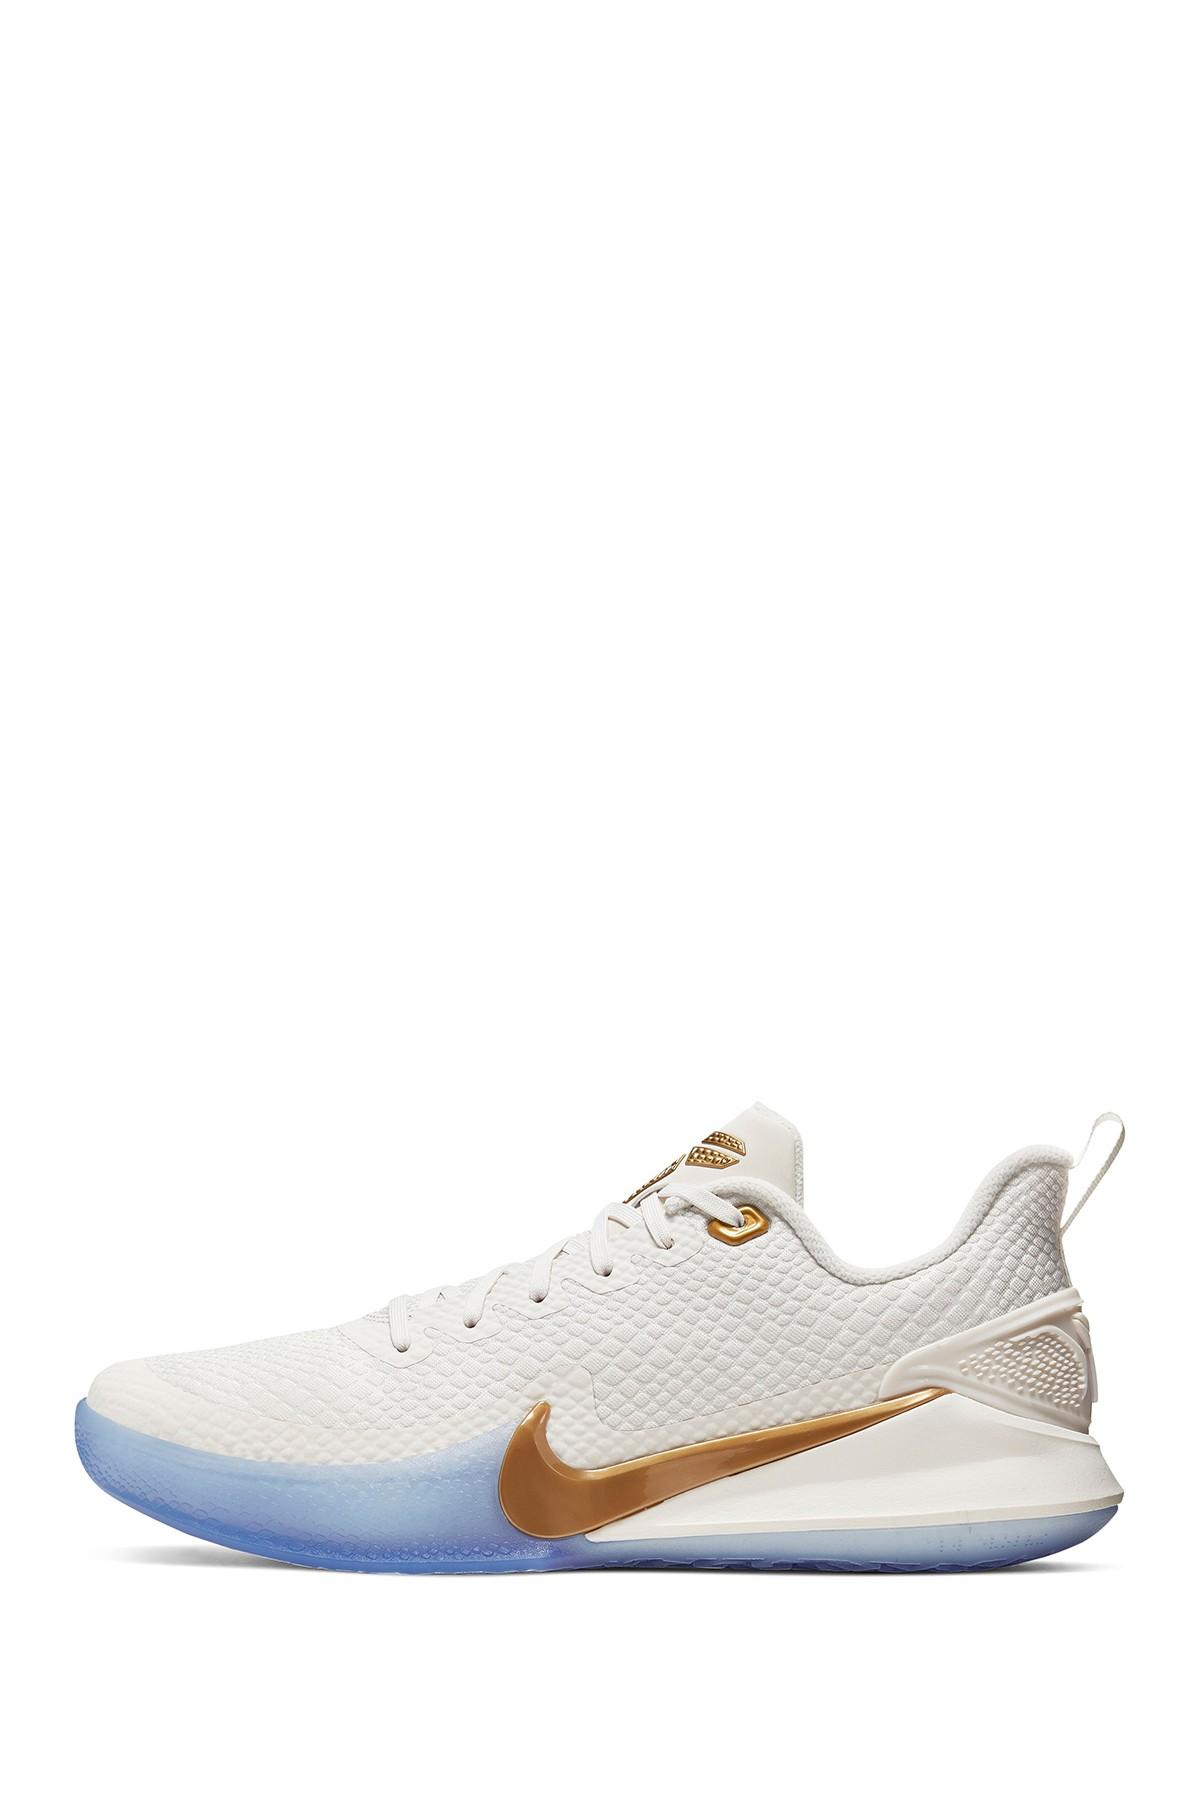 white mamba basketball shoes